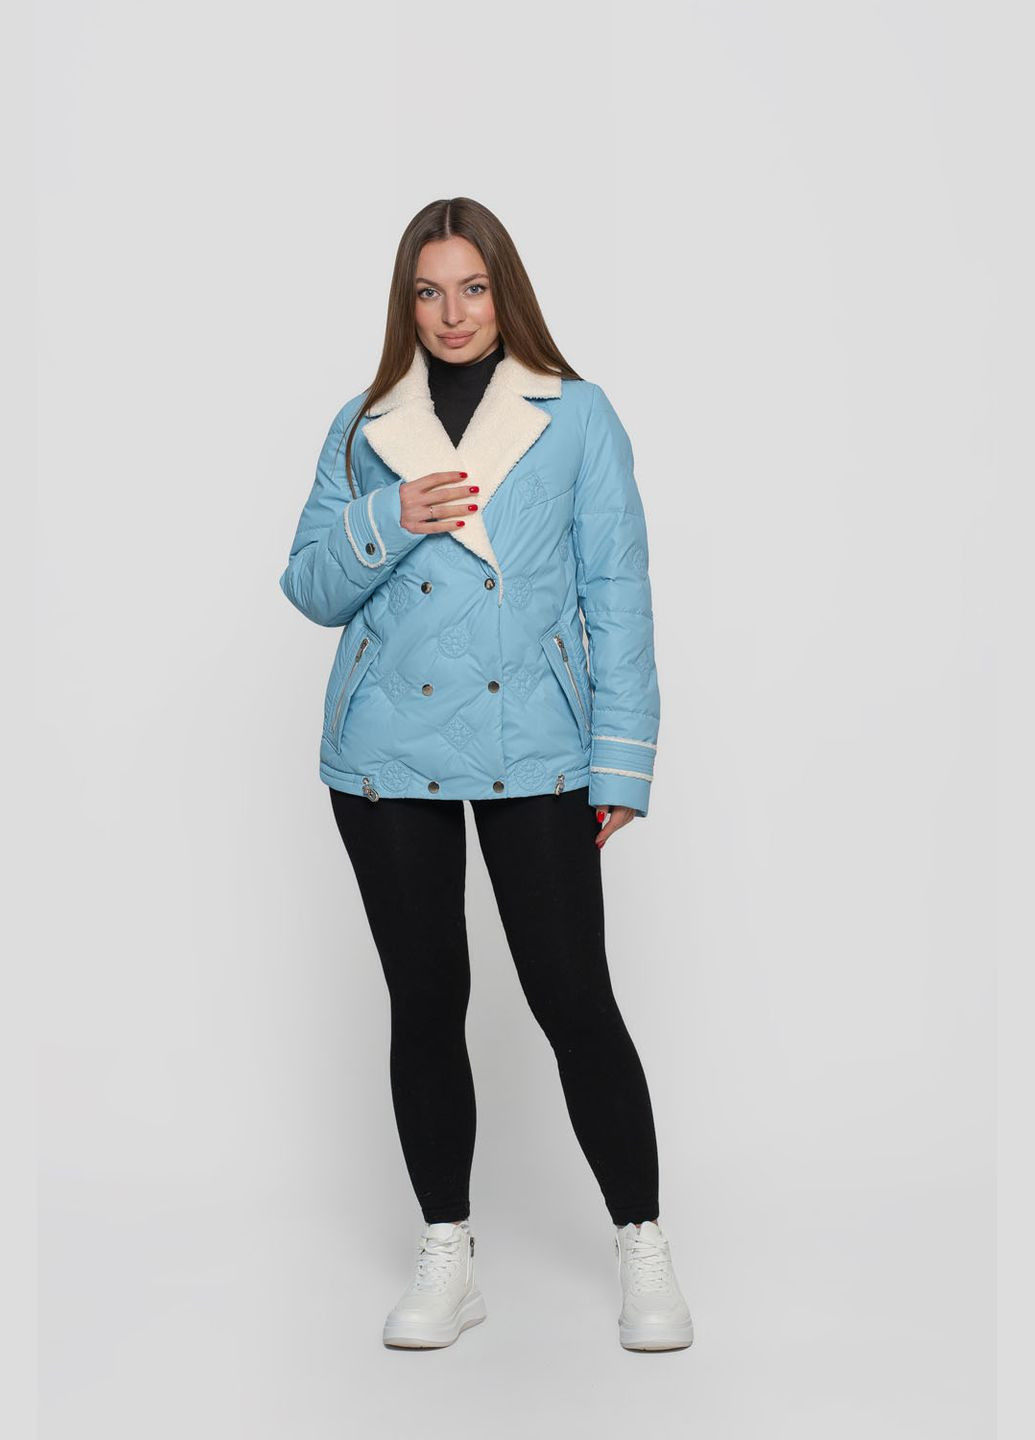 Голубая демисезонная куртка женская короткая viton куртка-пиджак Vicco